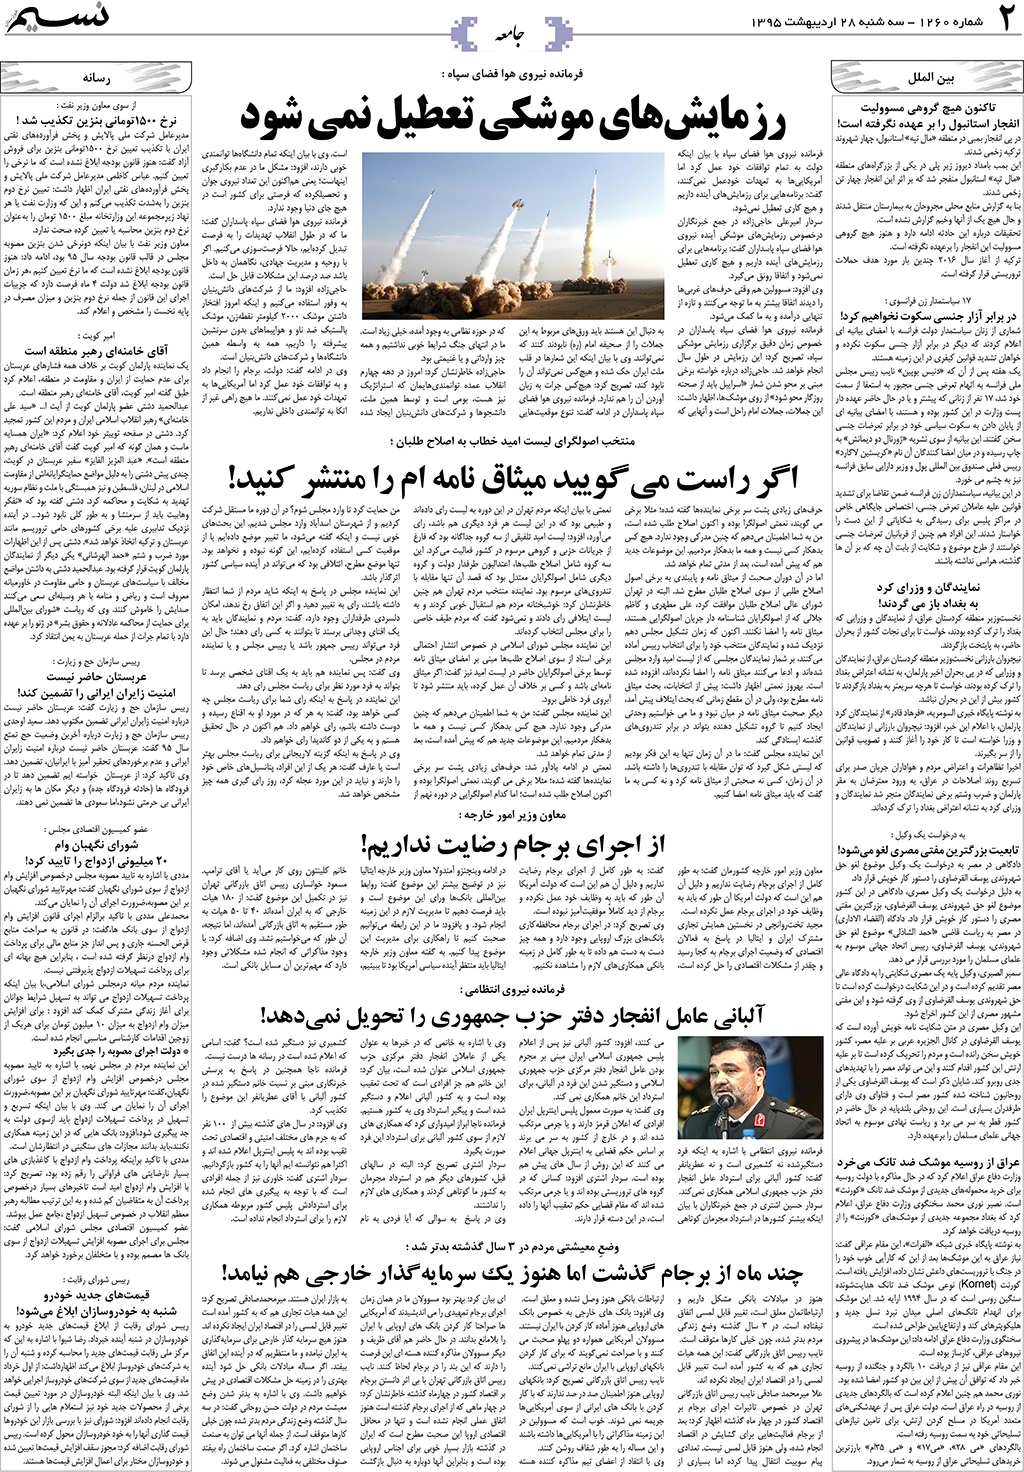 صفحه جامعه روزنامه نسیم شماره 1260